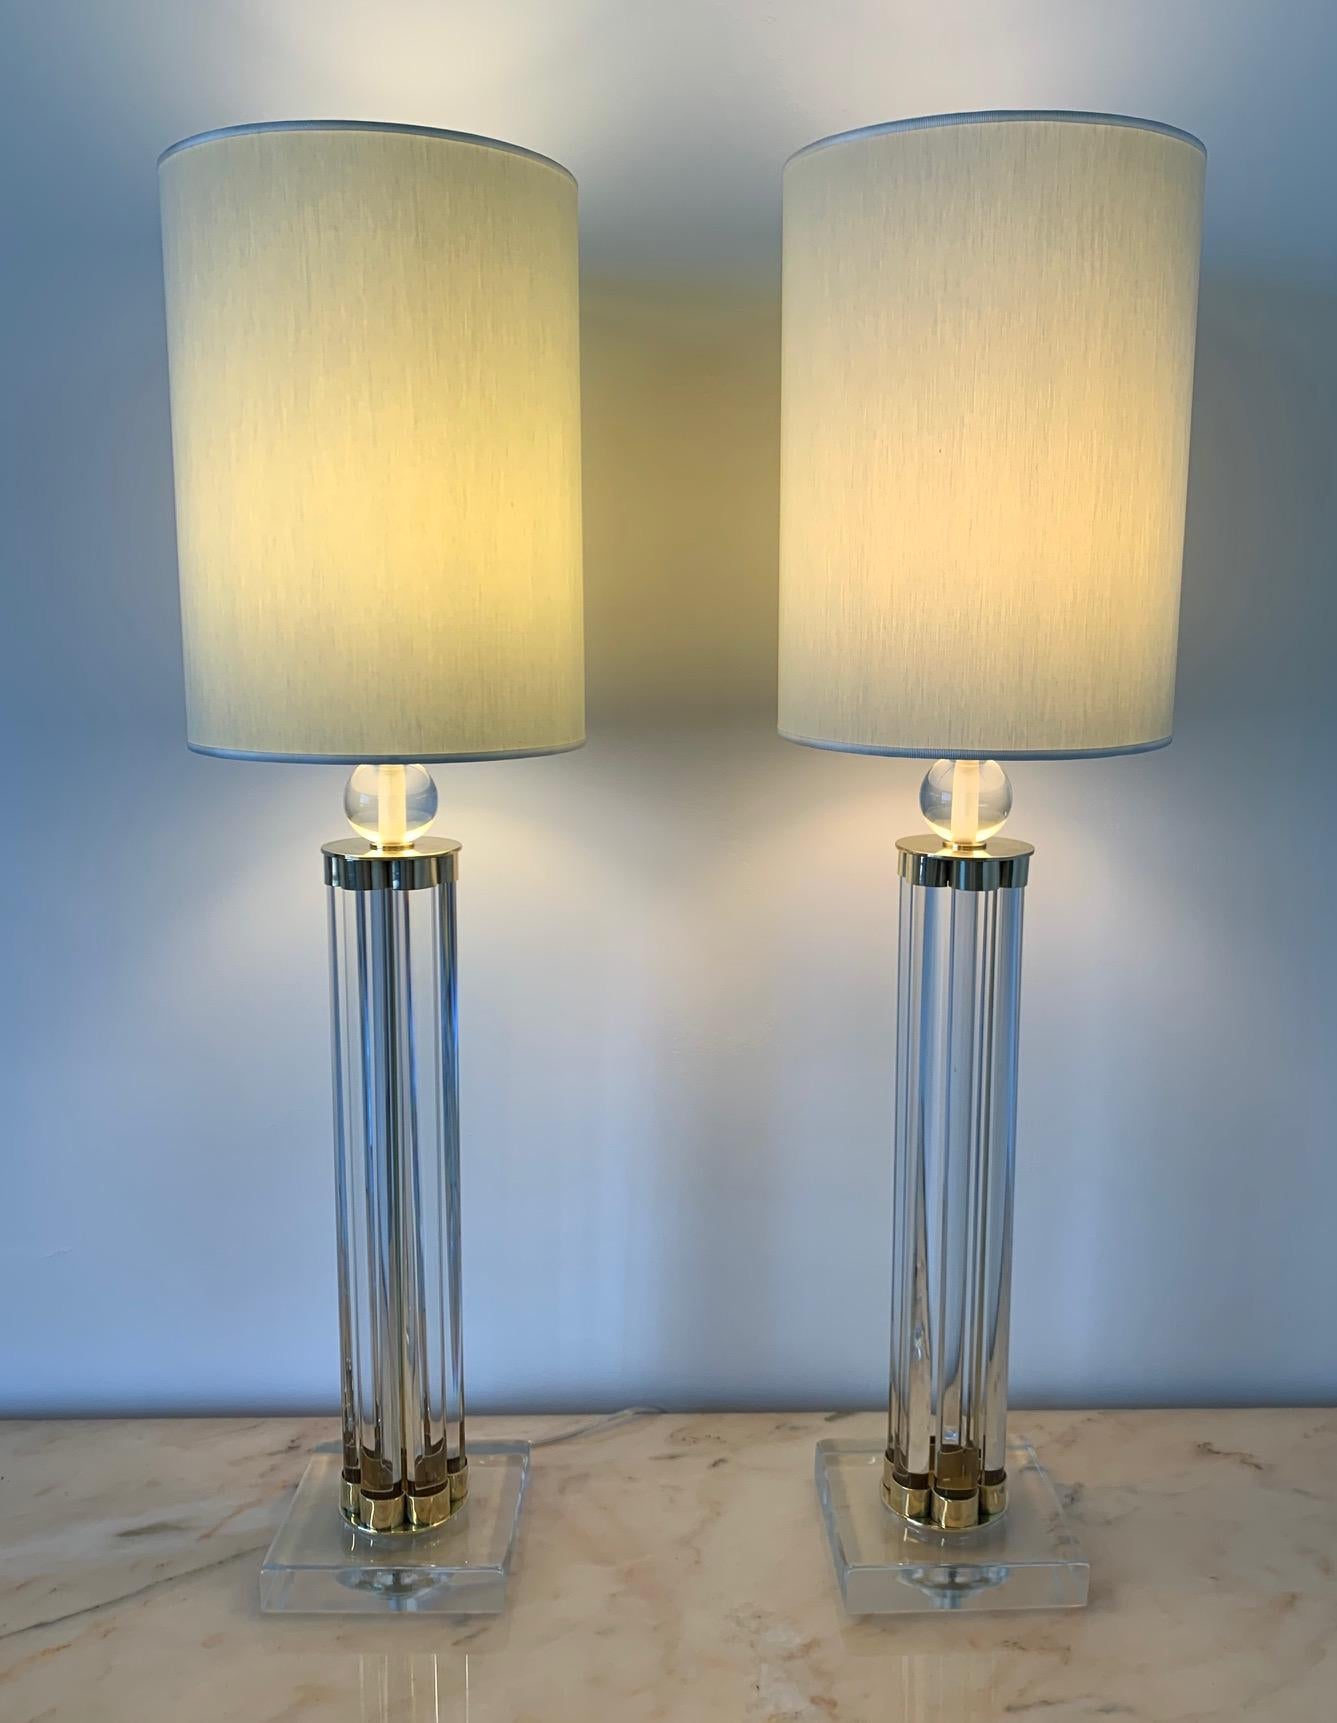 Cette paire de lampes de Murano a été produite en Italie au début des années 2000.
Les lampes sont entièrement en verre de Murano et les détails en laiton.